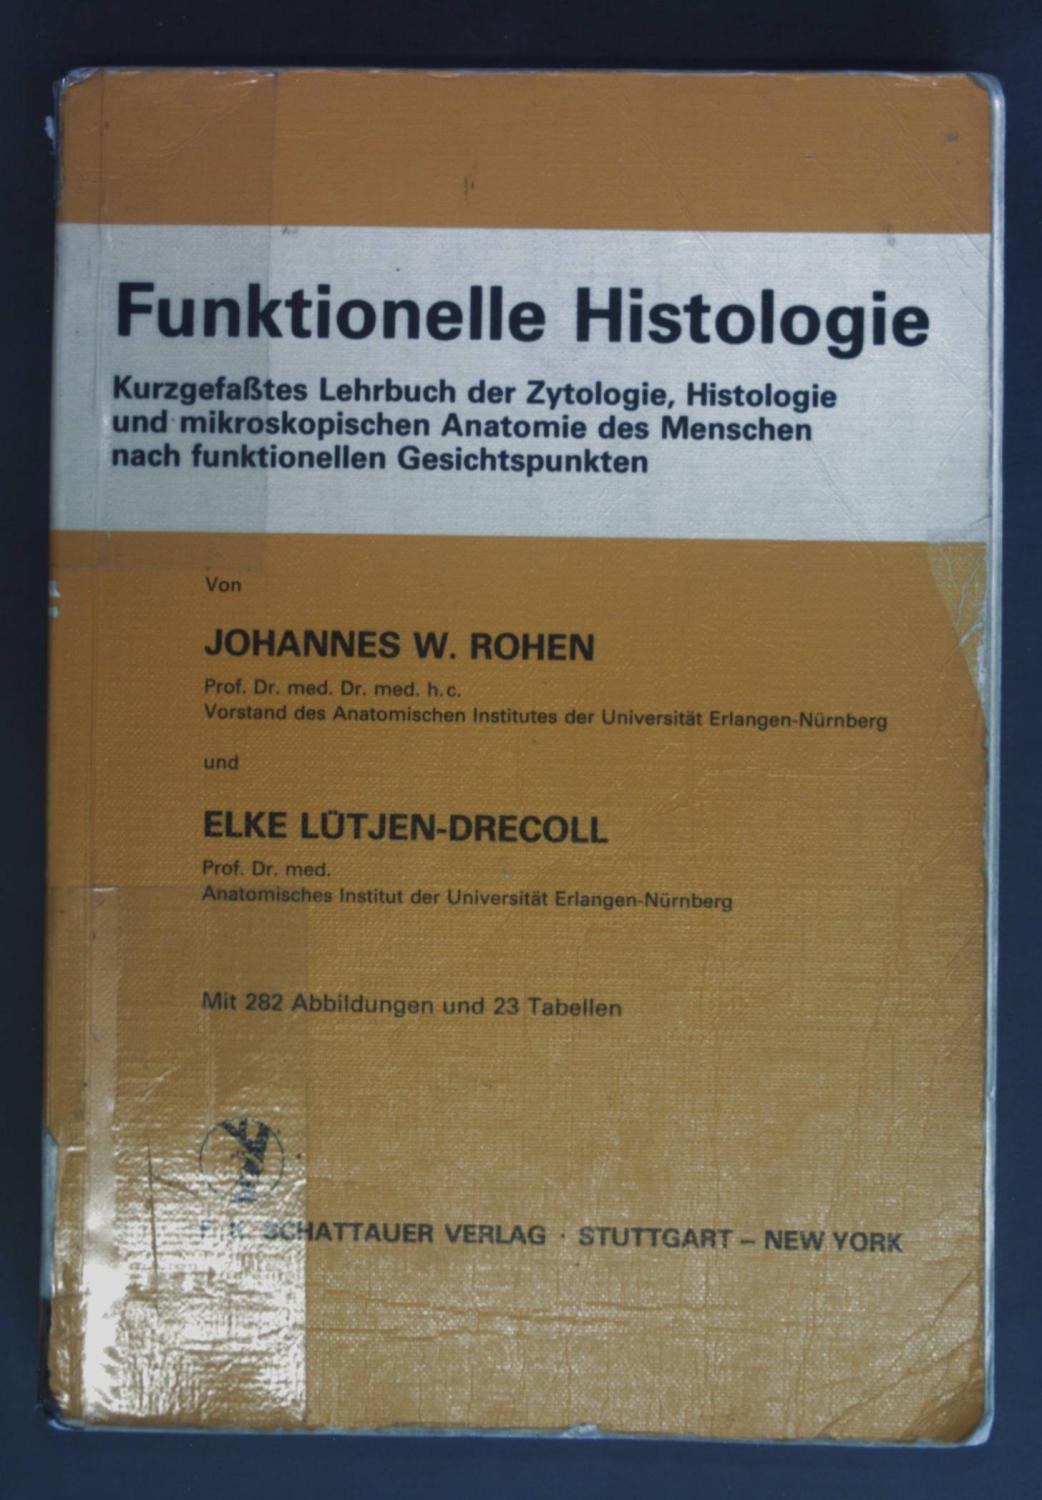 Funktionelle Histologie: Kurzgefasstes Lehrbuch der Zytologie, Histologie und mikroskopischen Anatomie des Menschen nach funktionellen Gesichtspunkten